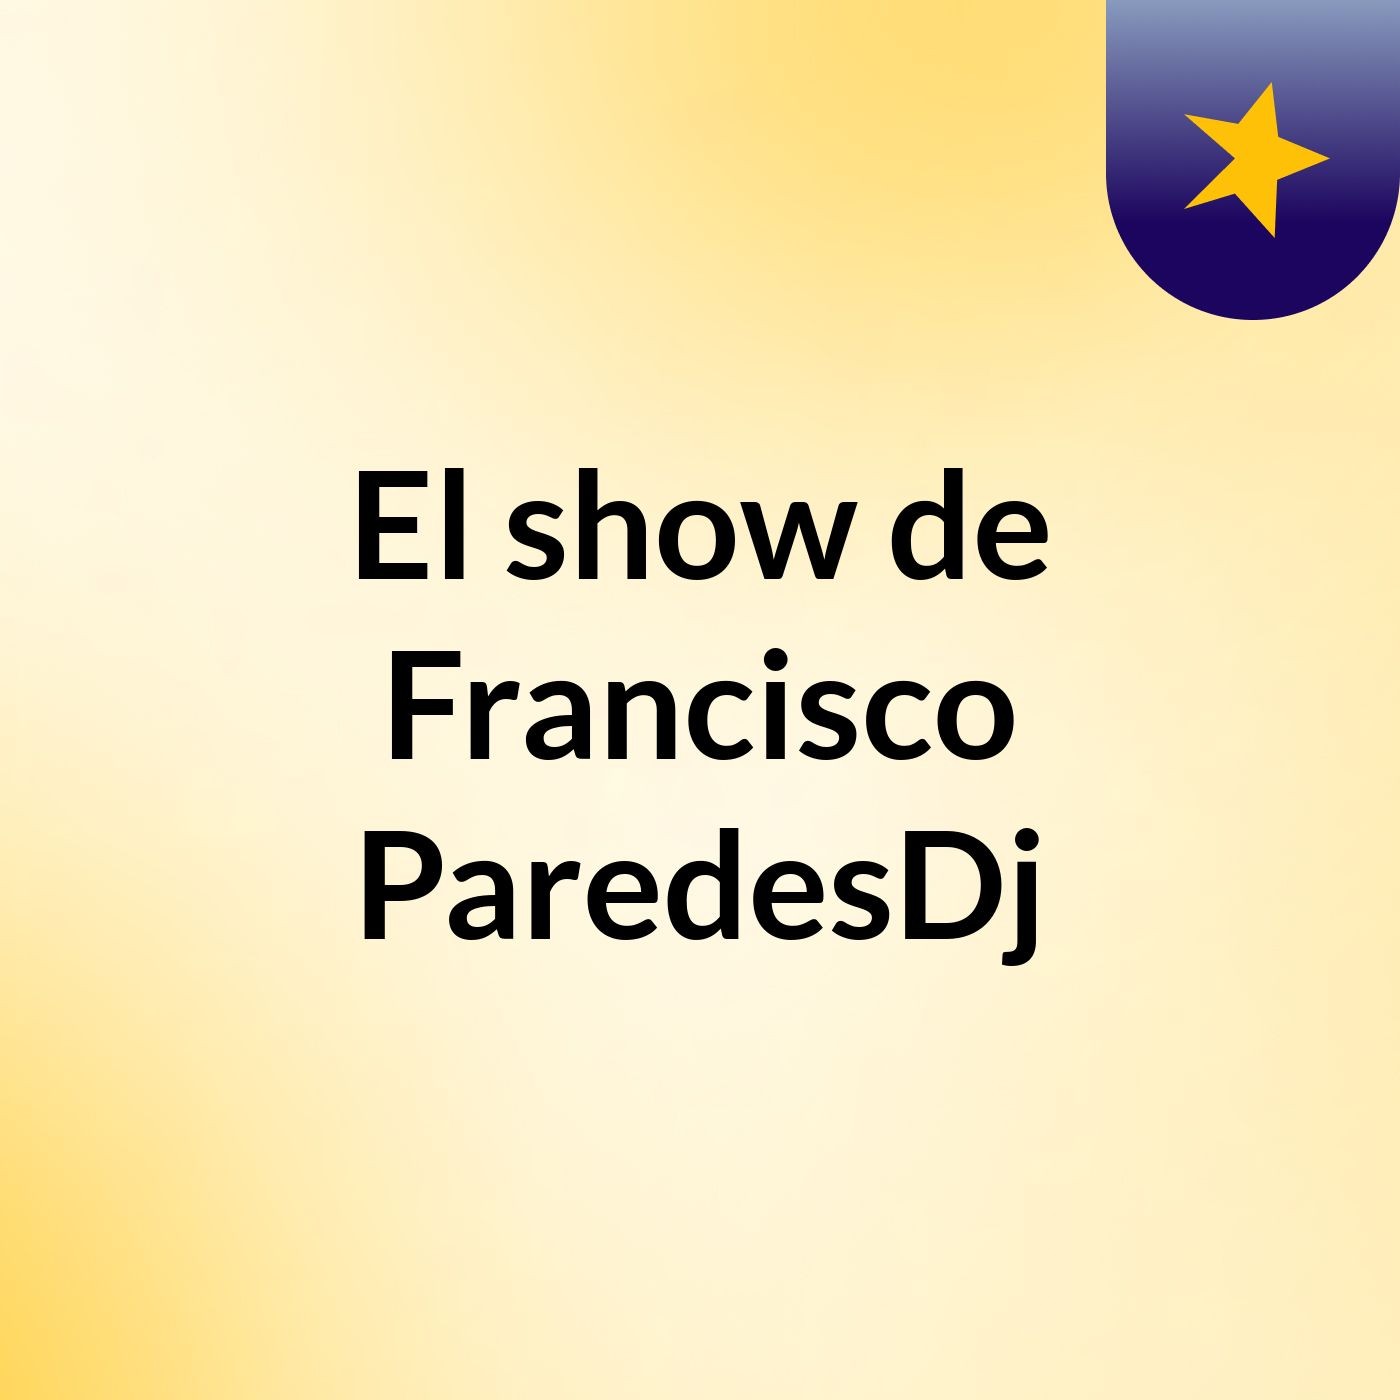 Episodio 3 - El show de Francisco ParedesDj